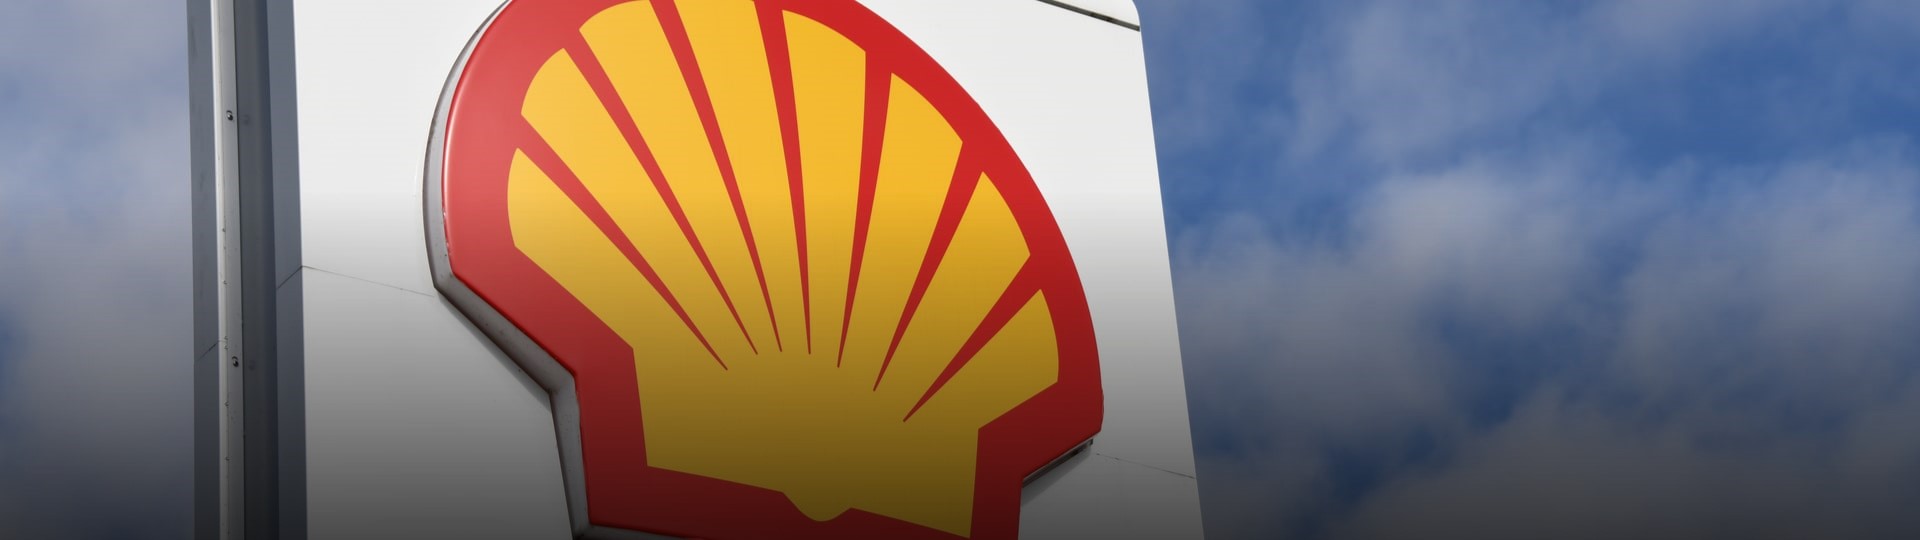 Shell zvýšil čtvrtletní zisk, navzdory nejistotě vyplatí i vyšší dividendu